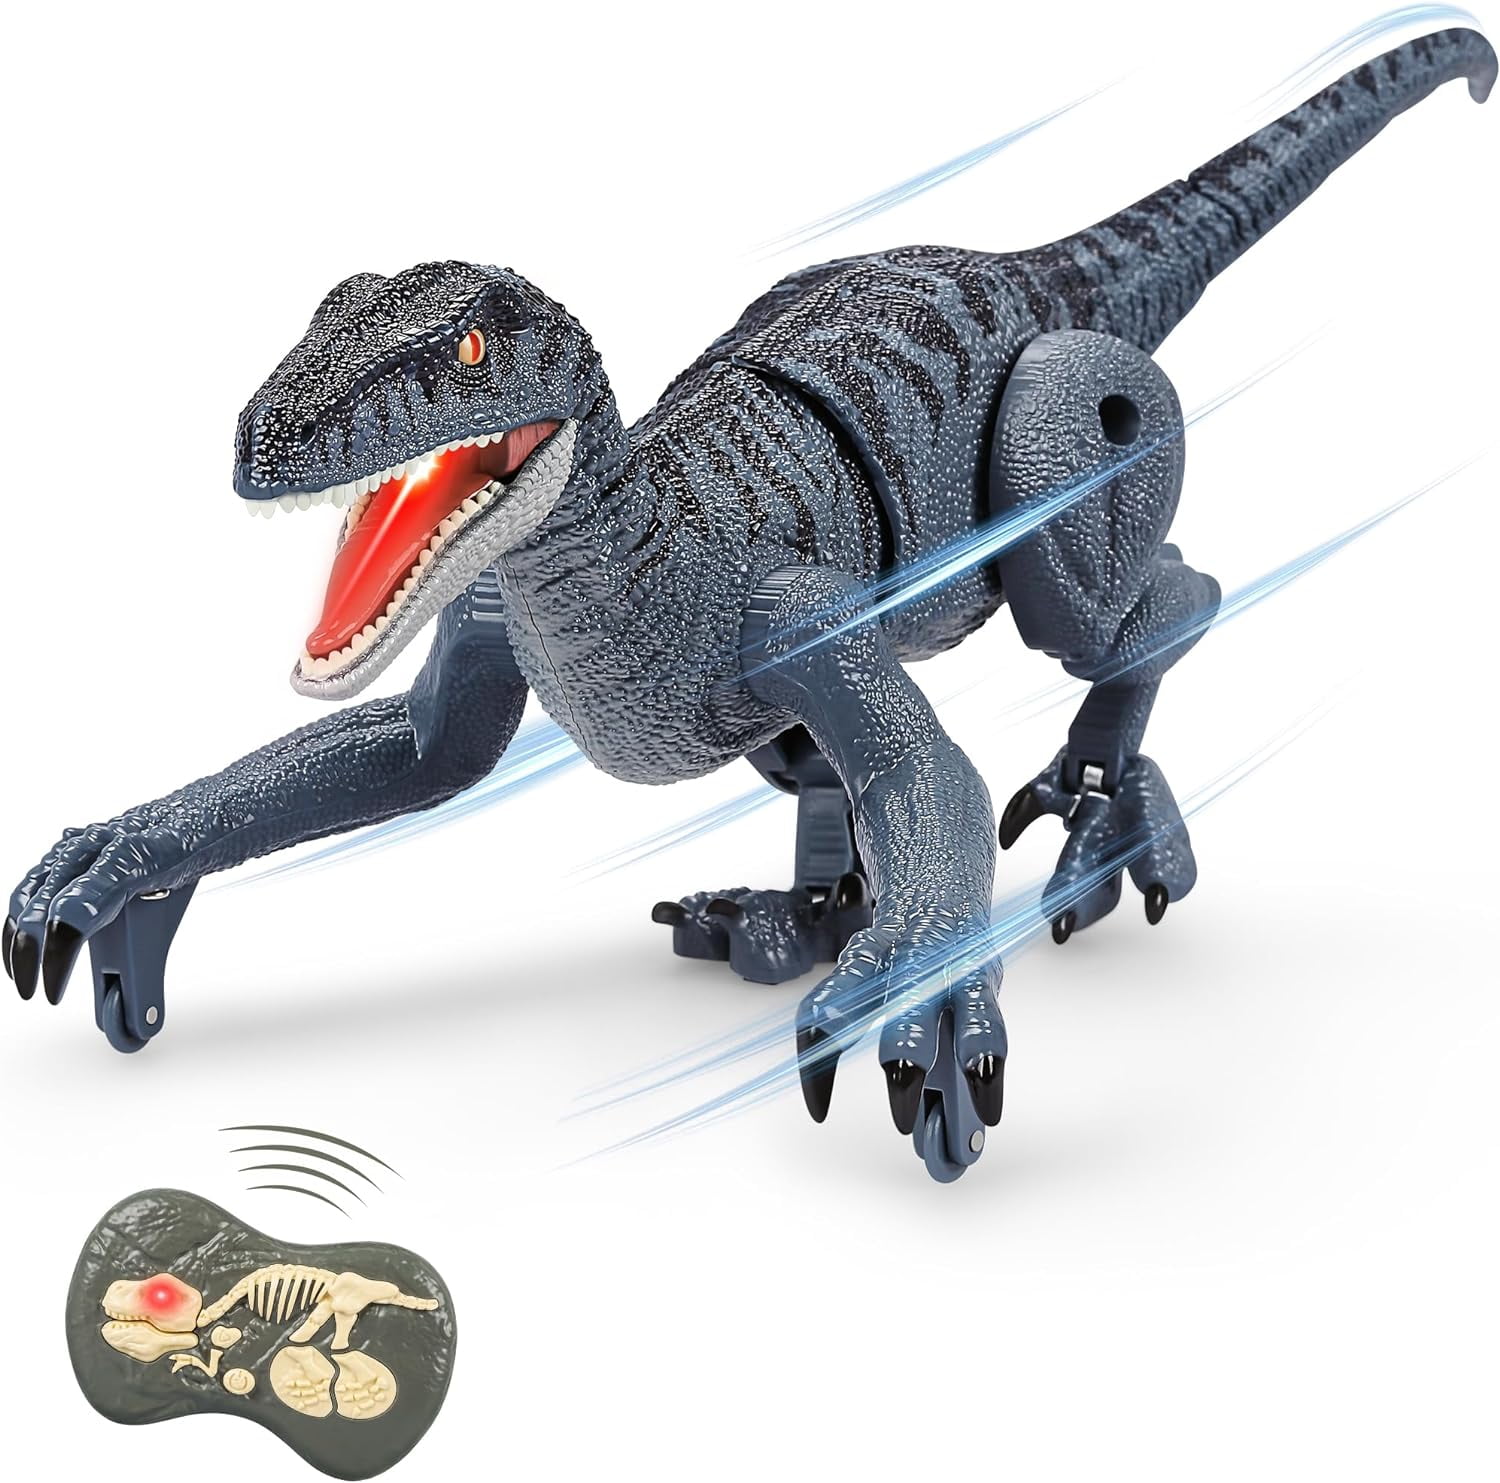 Jurassic World Snap Squad Figurine - N/A - Kiabi - 9.49€